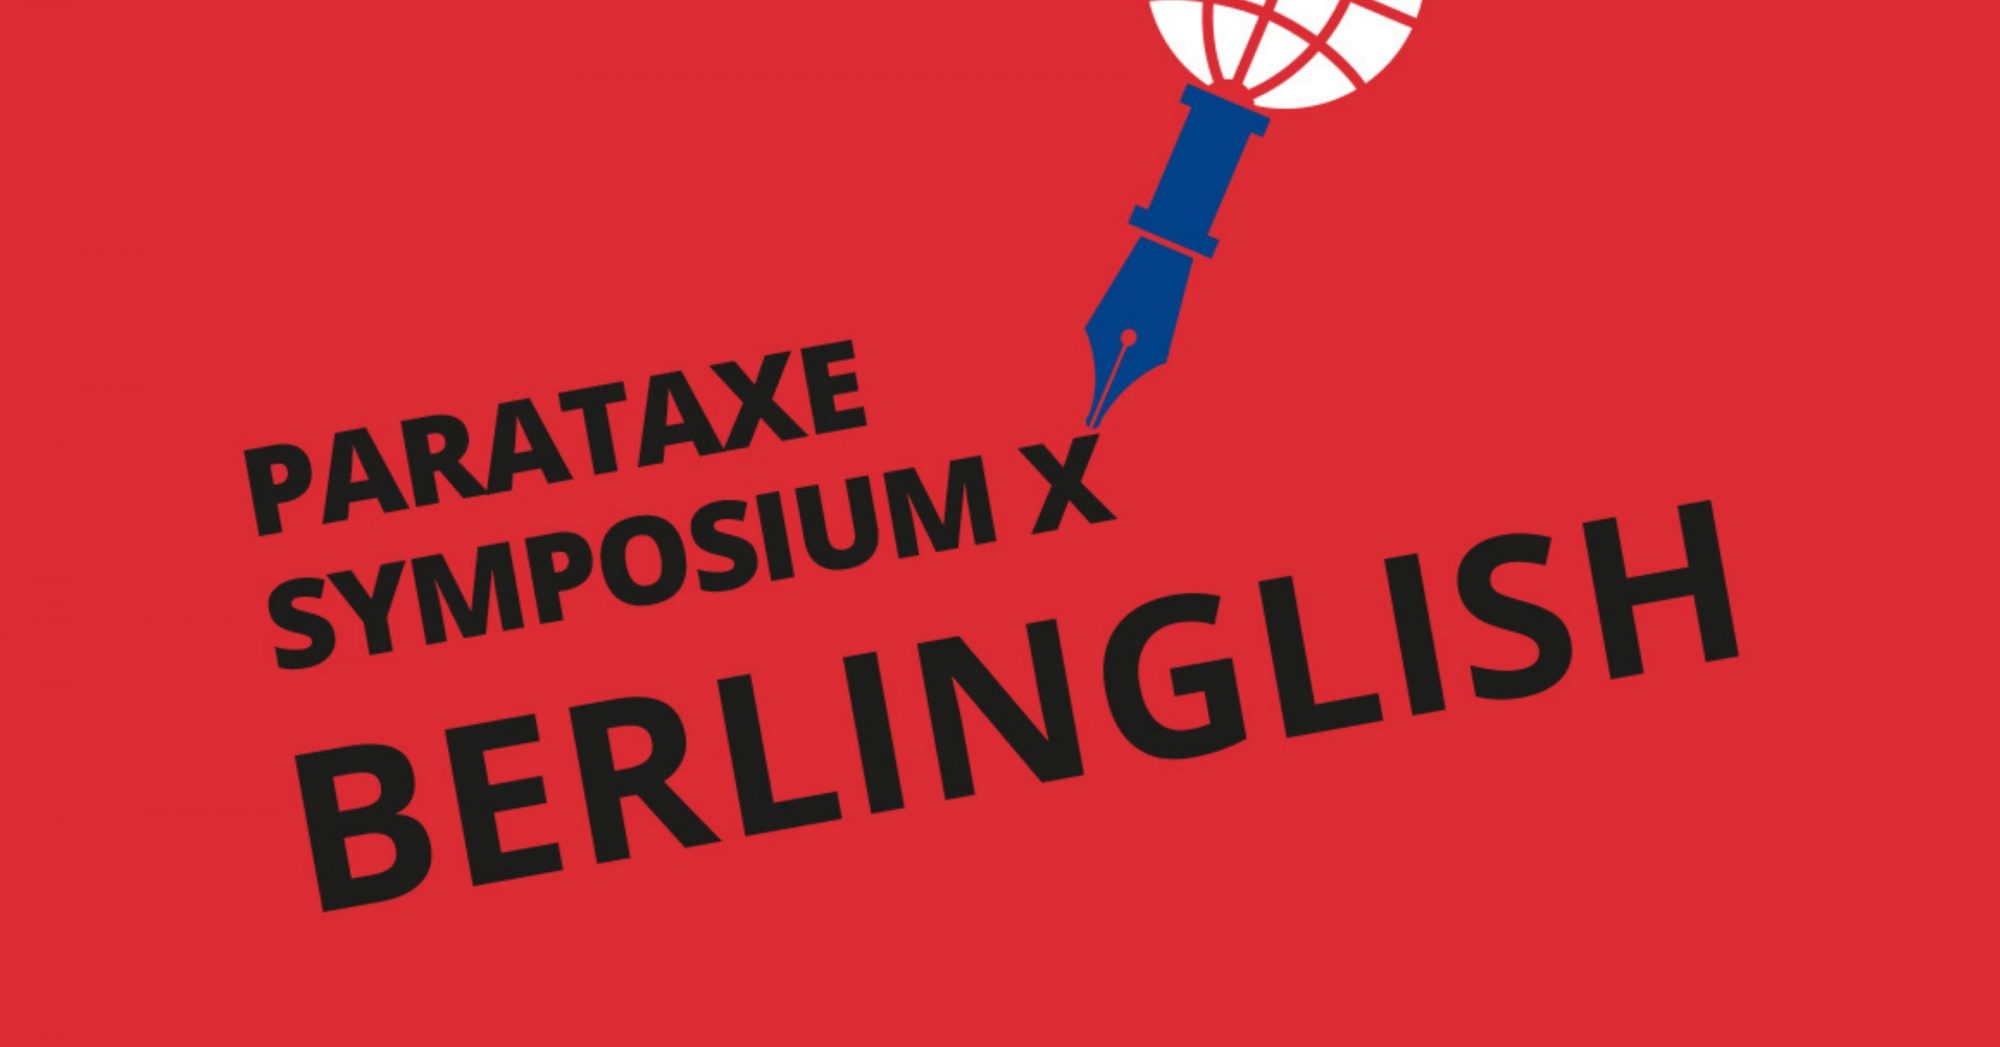 parataxe symposium X